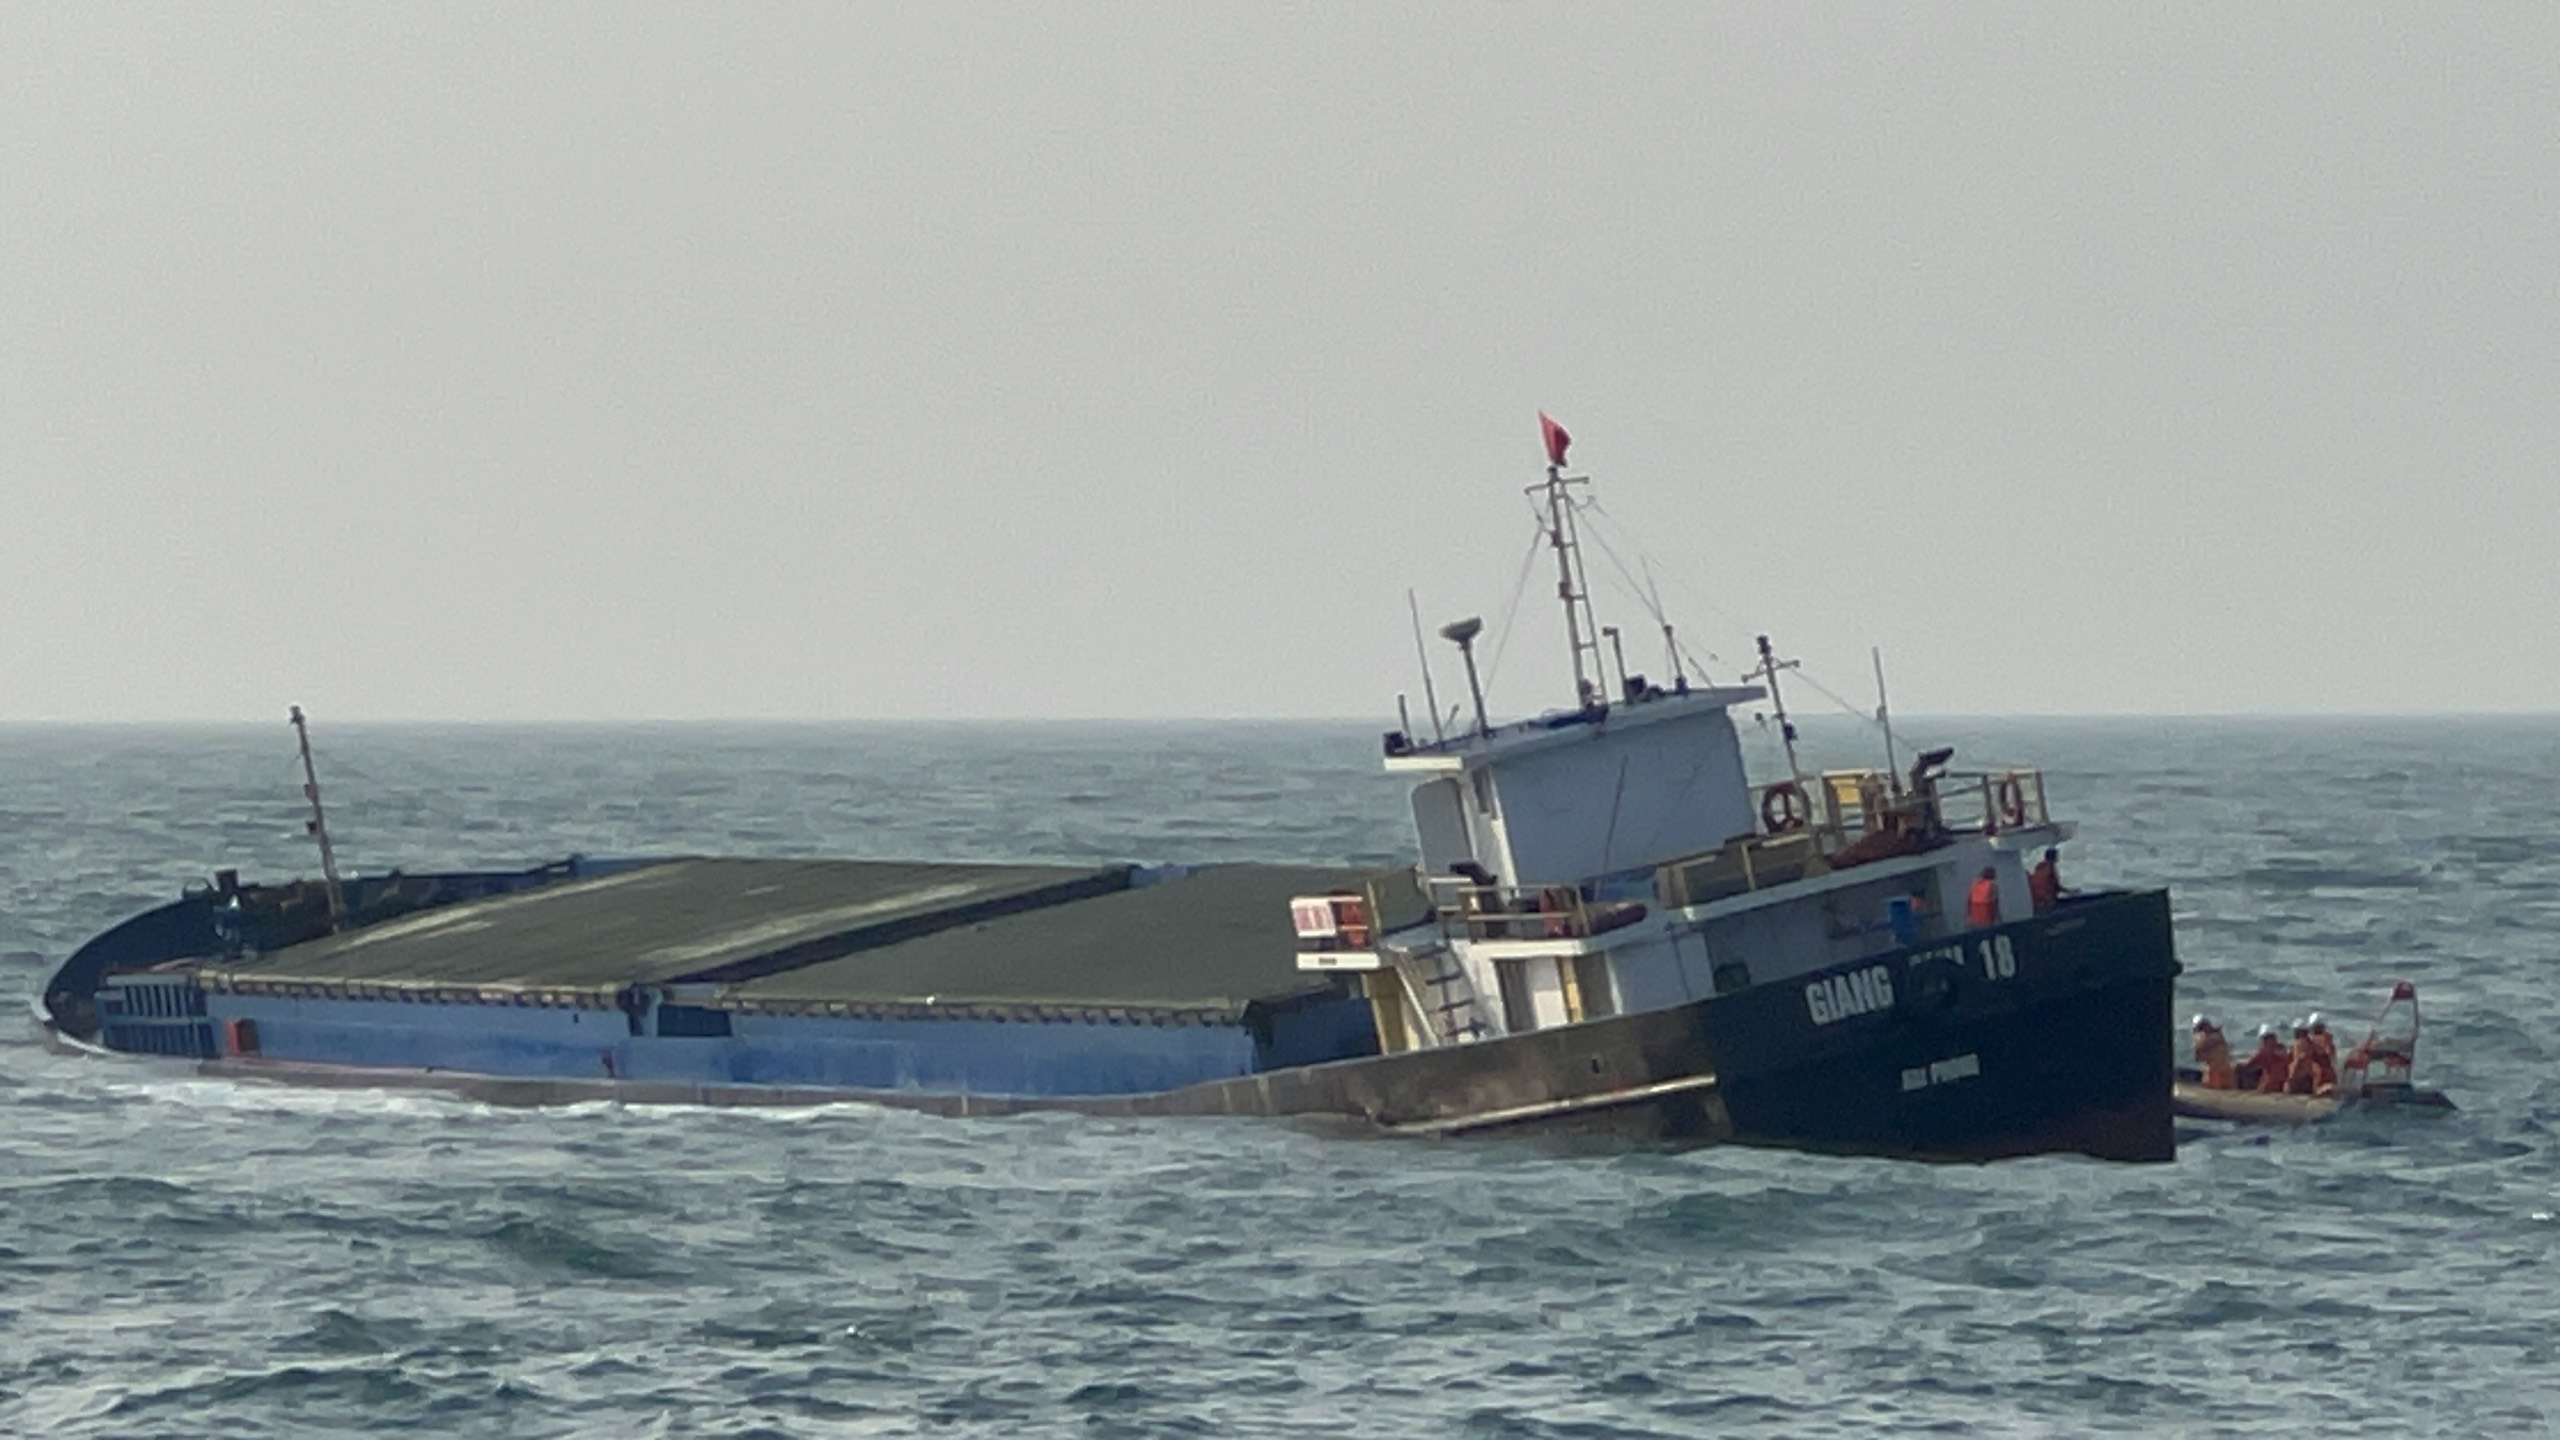 Hình ảnh hiện trường cứu 9 thuyền viên tàu Giang Anh 18 bị chìm do đâm vào bãi đá cạn- Ảnh 3.